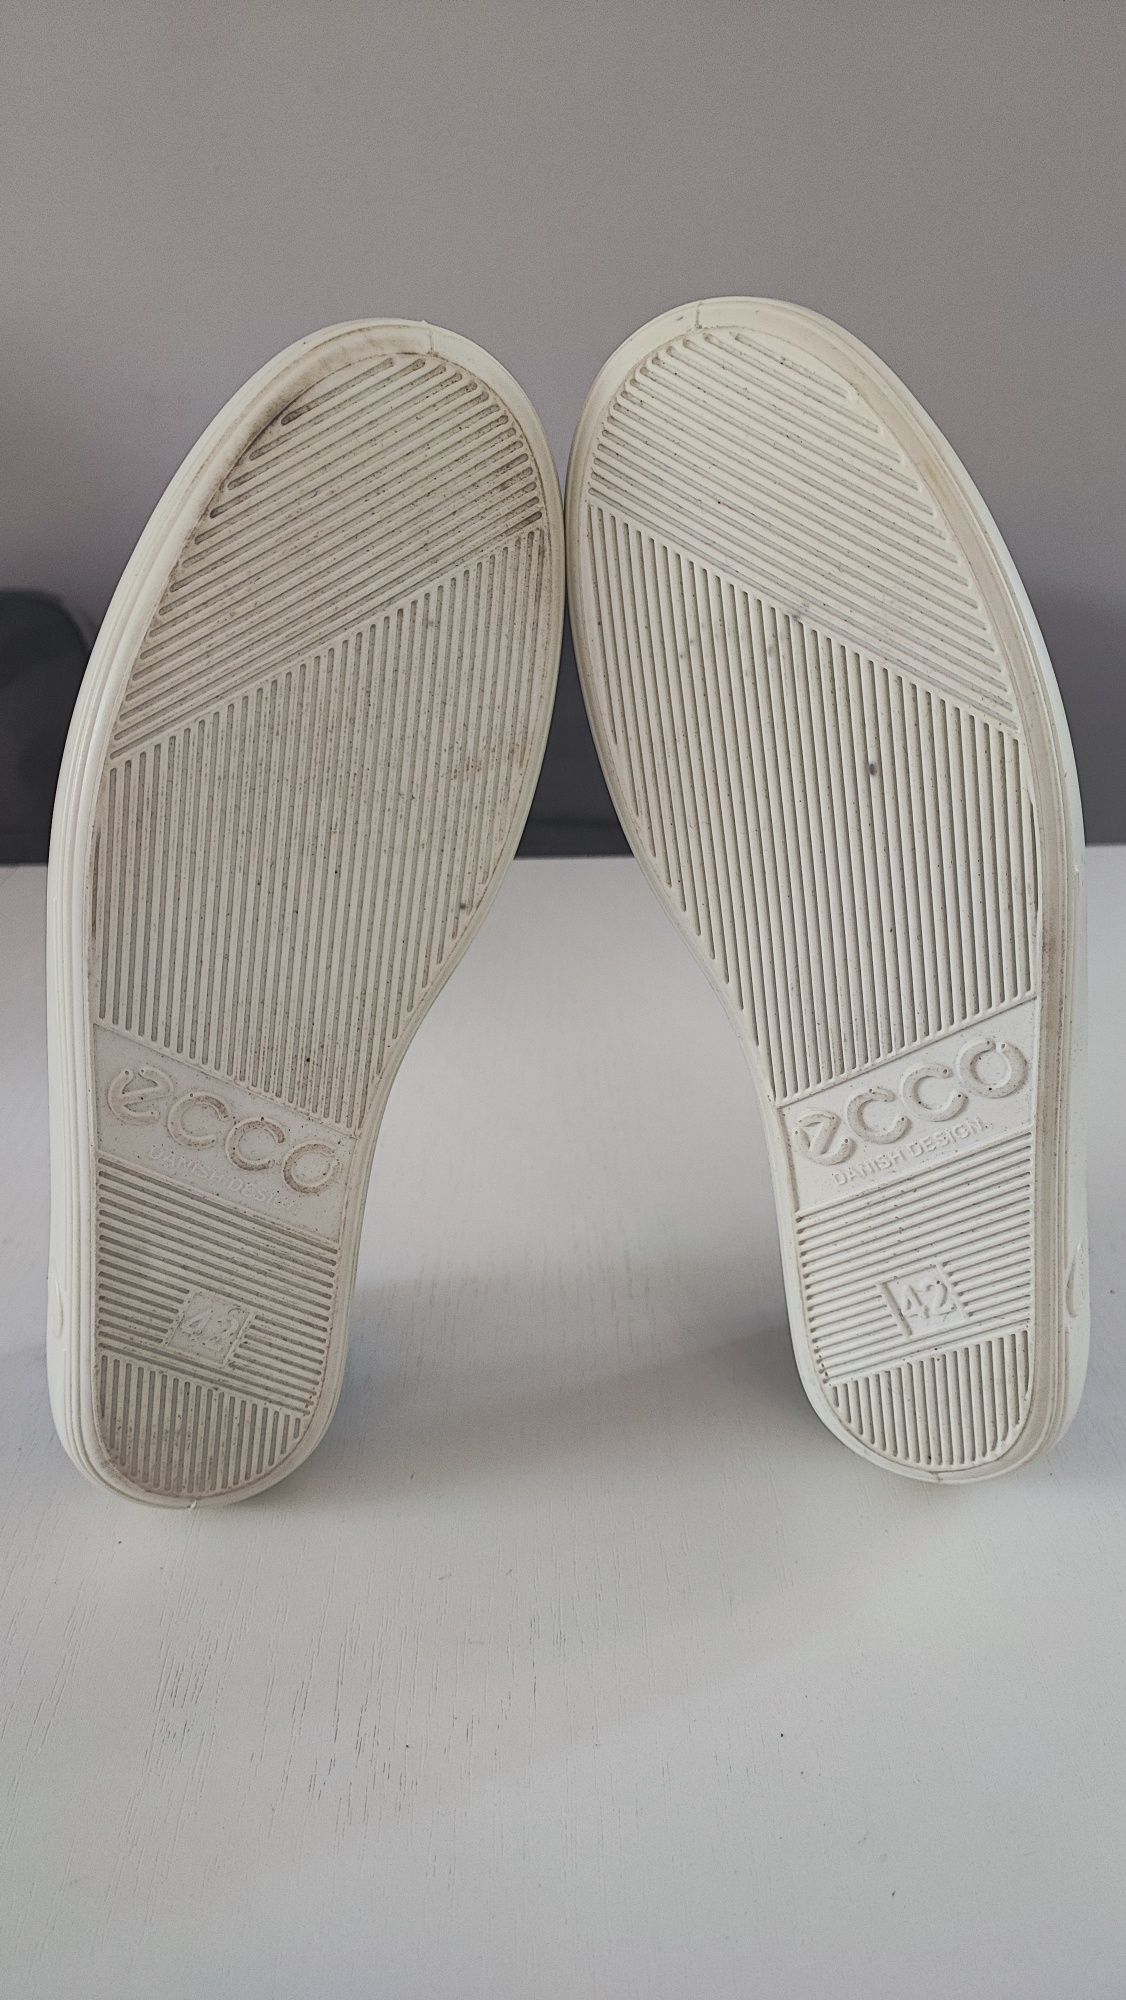 Buty sneakersy damskie Ecco soft 2.0 rozmiar 42